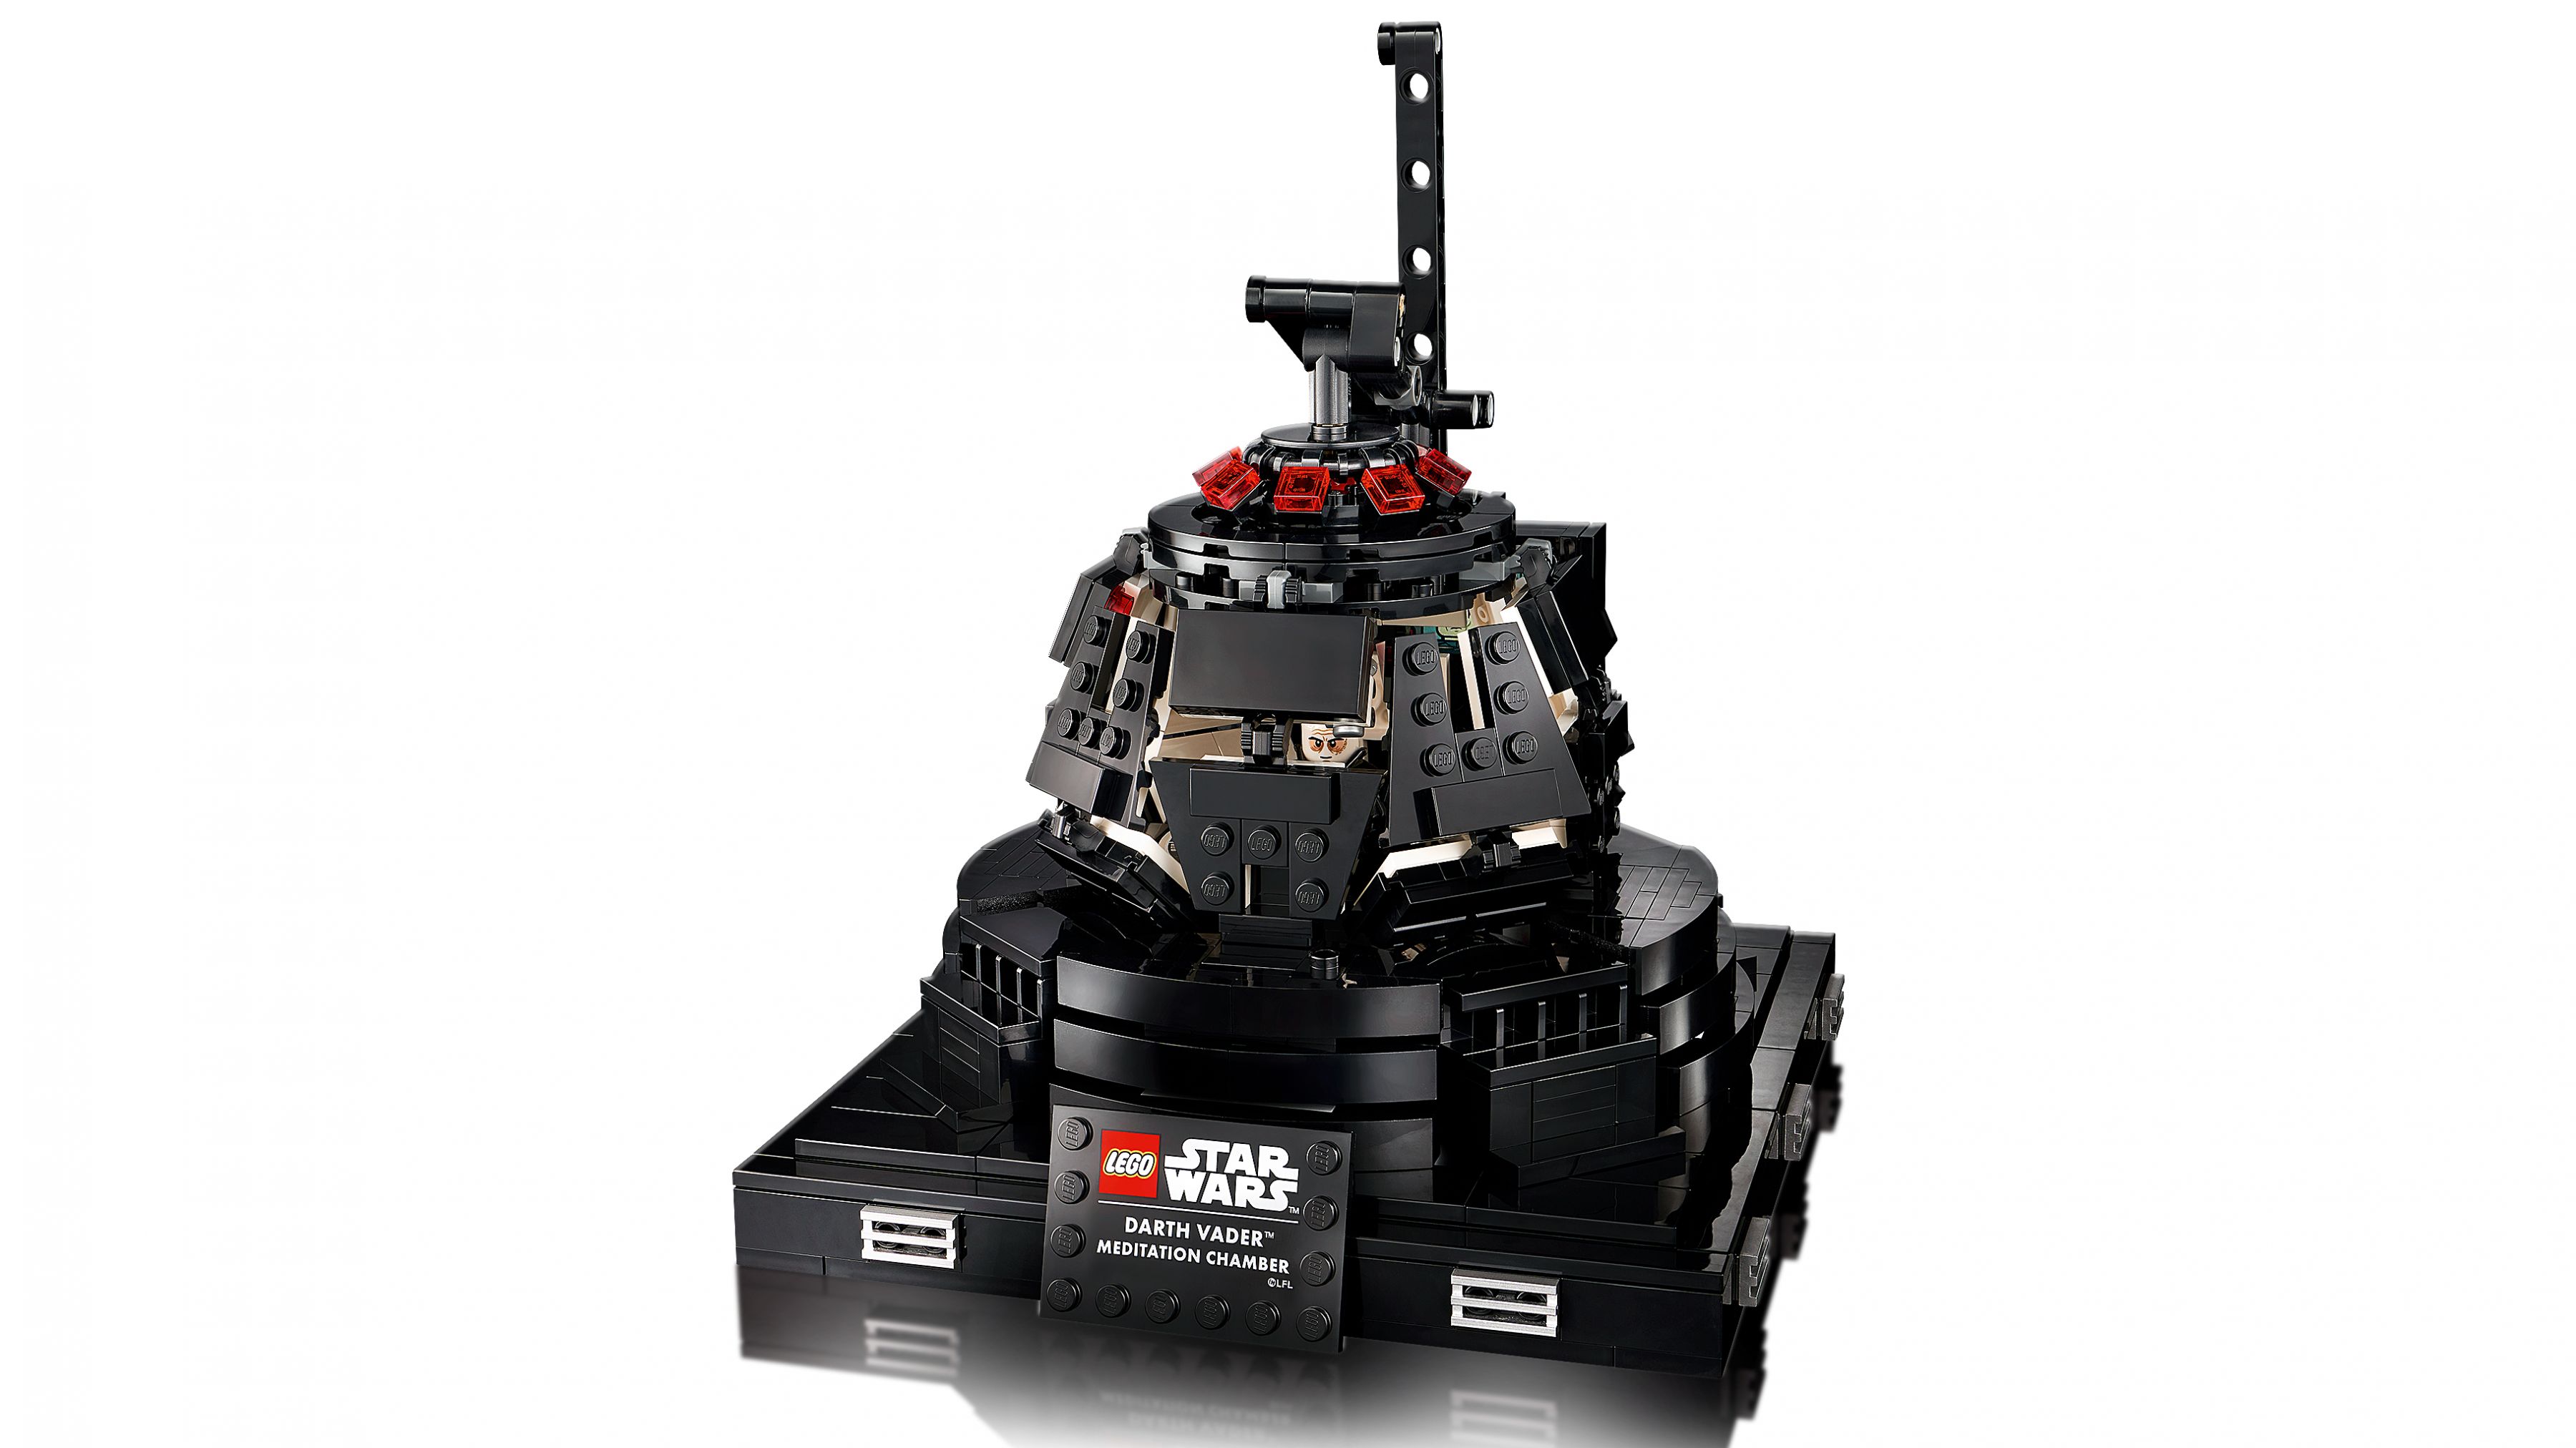 LEGO Star Wars 75296 Darth Vader™ Meditationskammer LEGO_75296_web_sec01_nobg.jpg